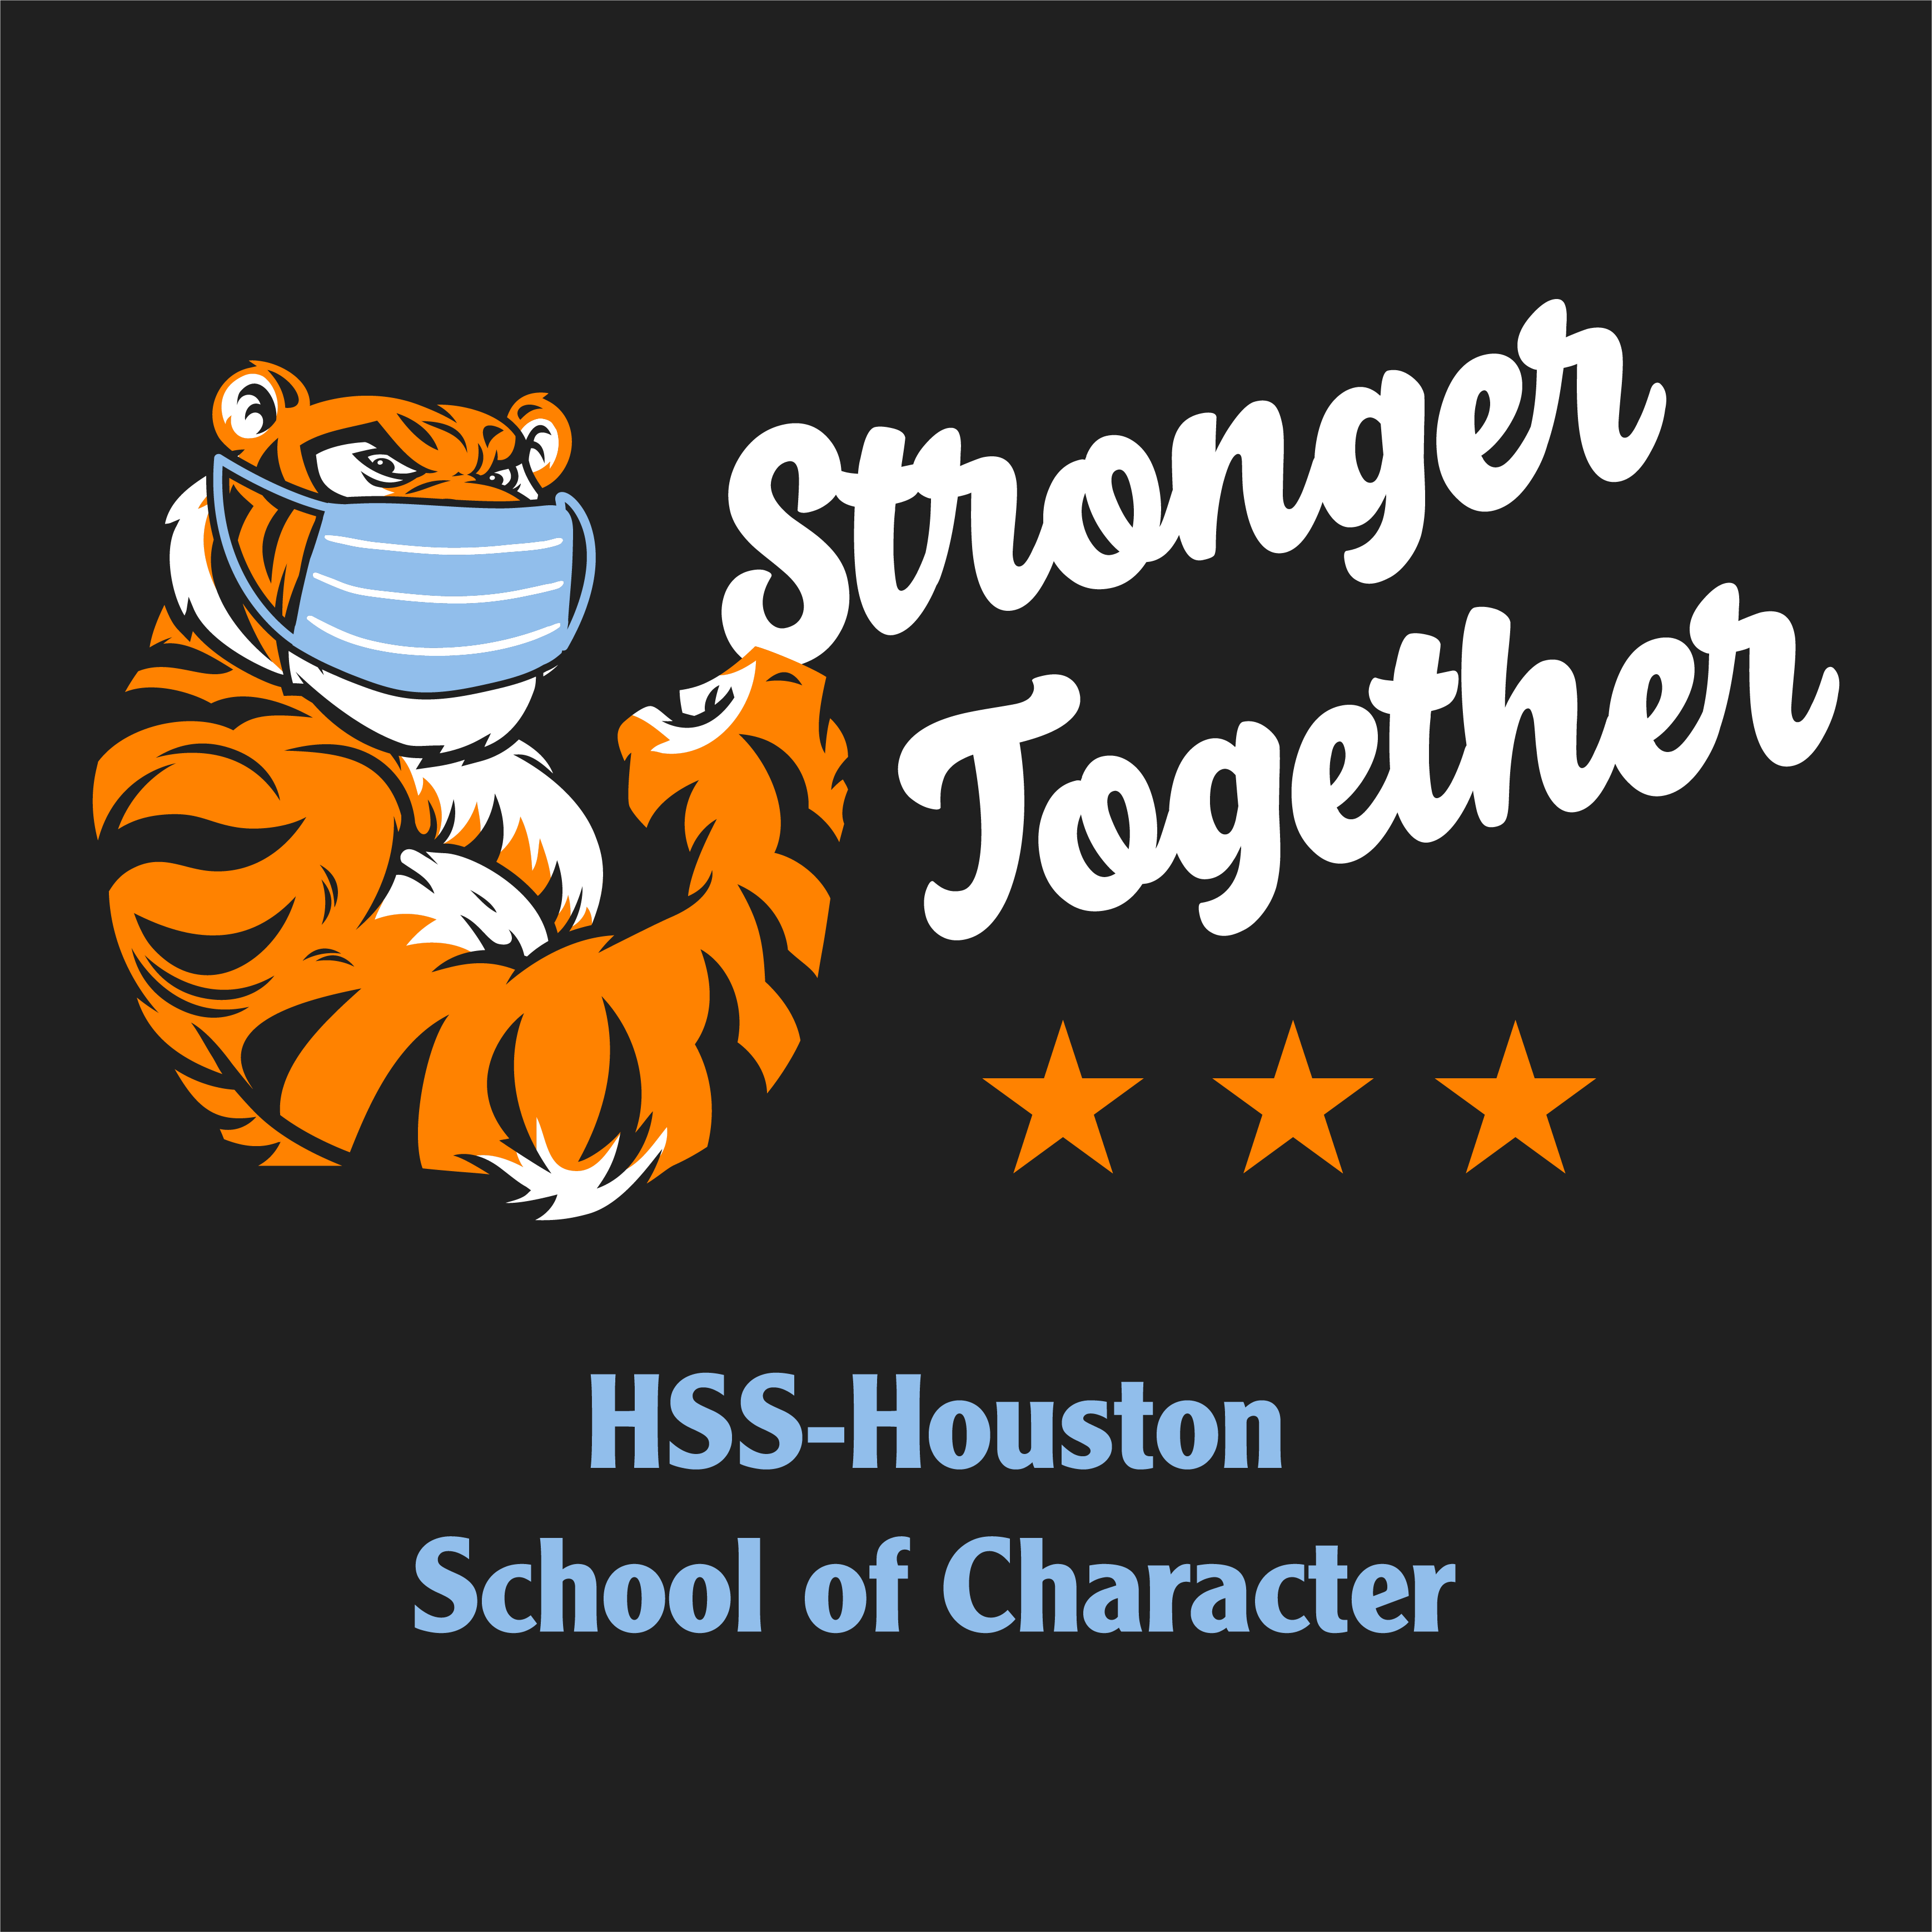 HSS Houston Spirit Shirt Fundraiser shirt design - zoomed